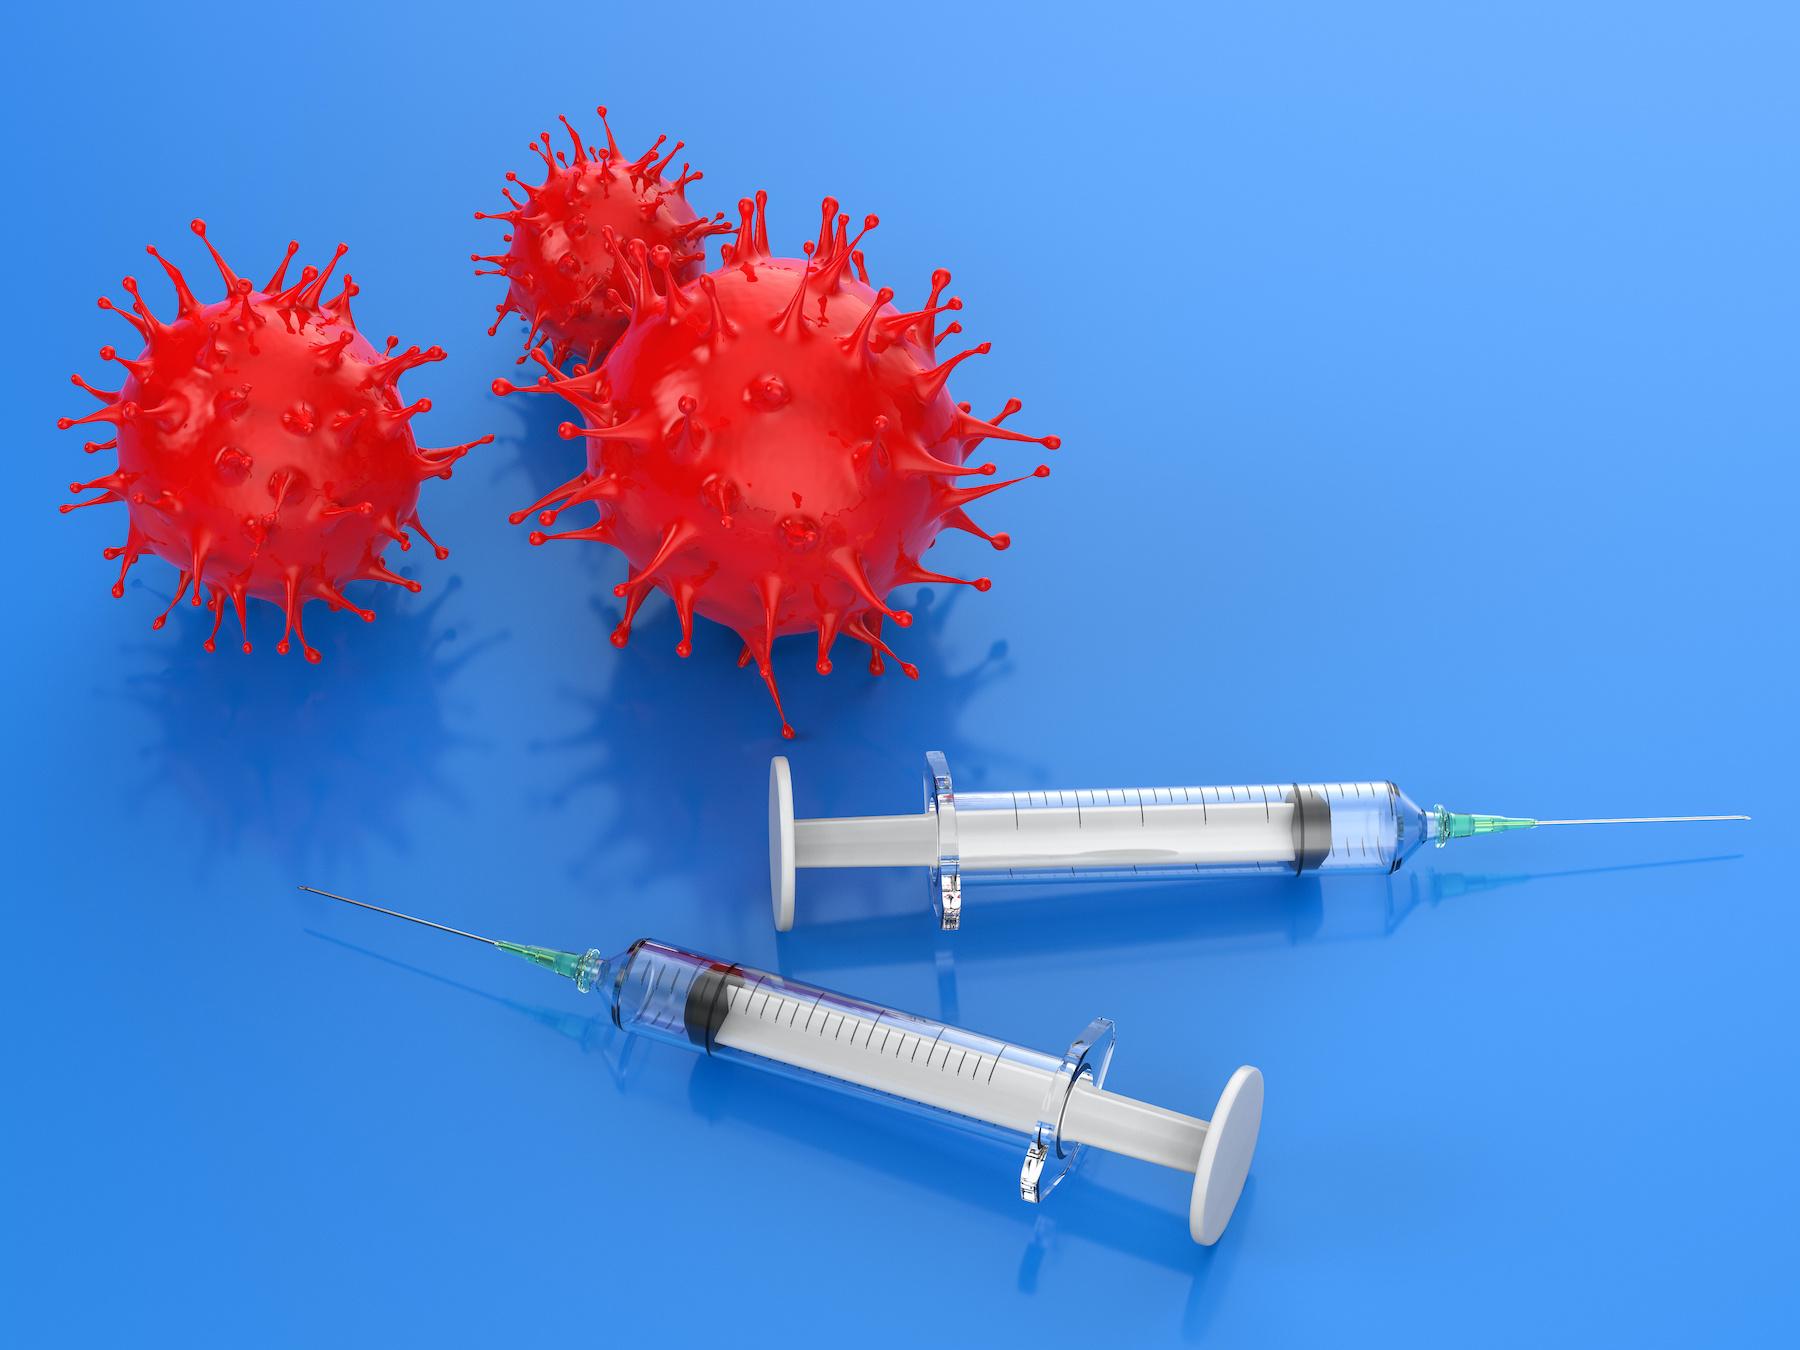 Le vaccin contre la grippe saisonnière pourrait offrir une protection partielle contre le coronavirus. ©&nbsp;phonlamaiphoto, Adobe Stock